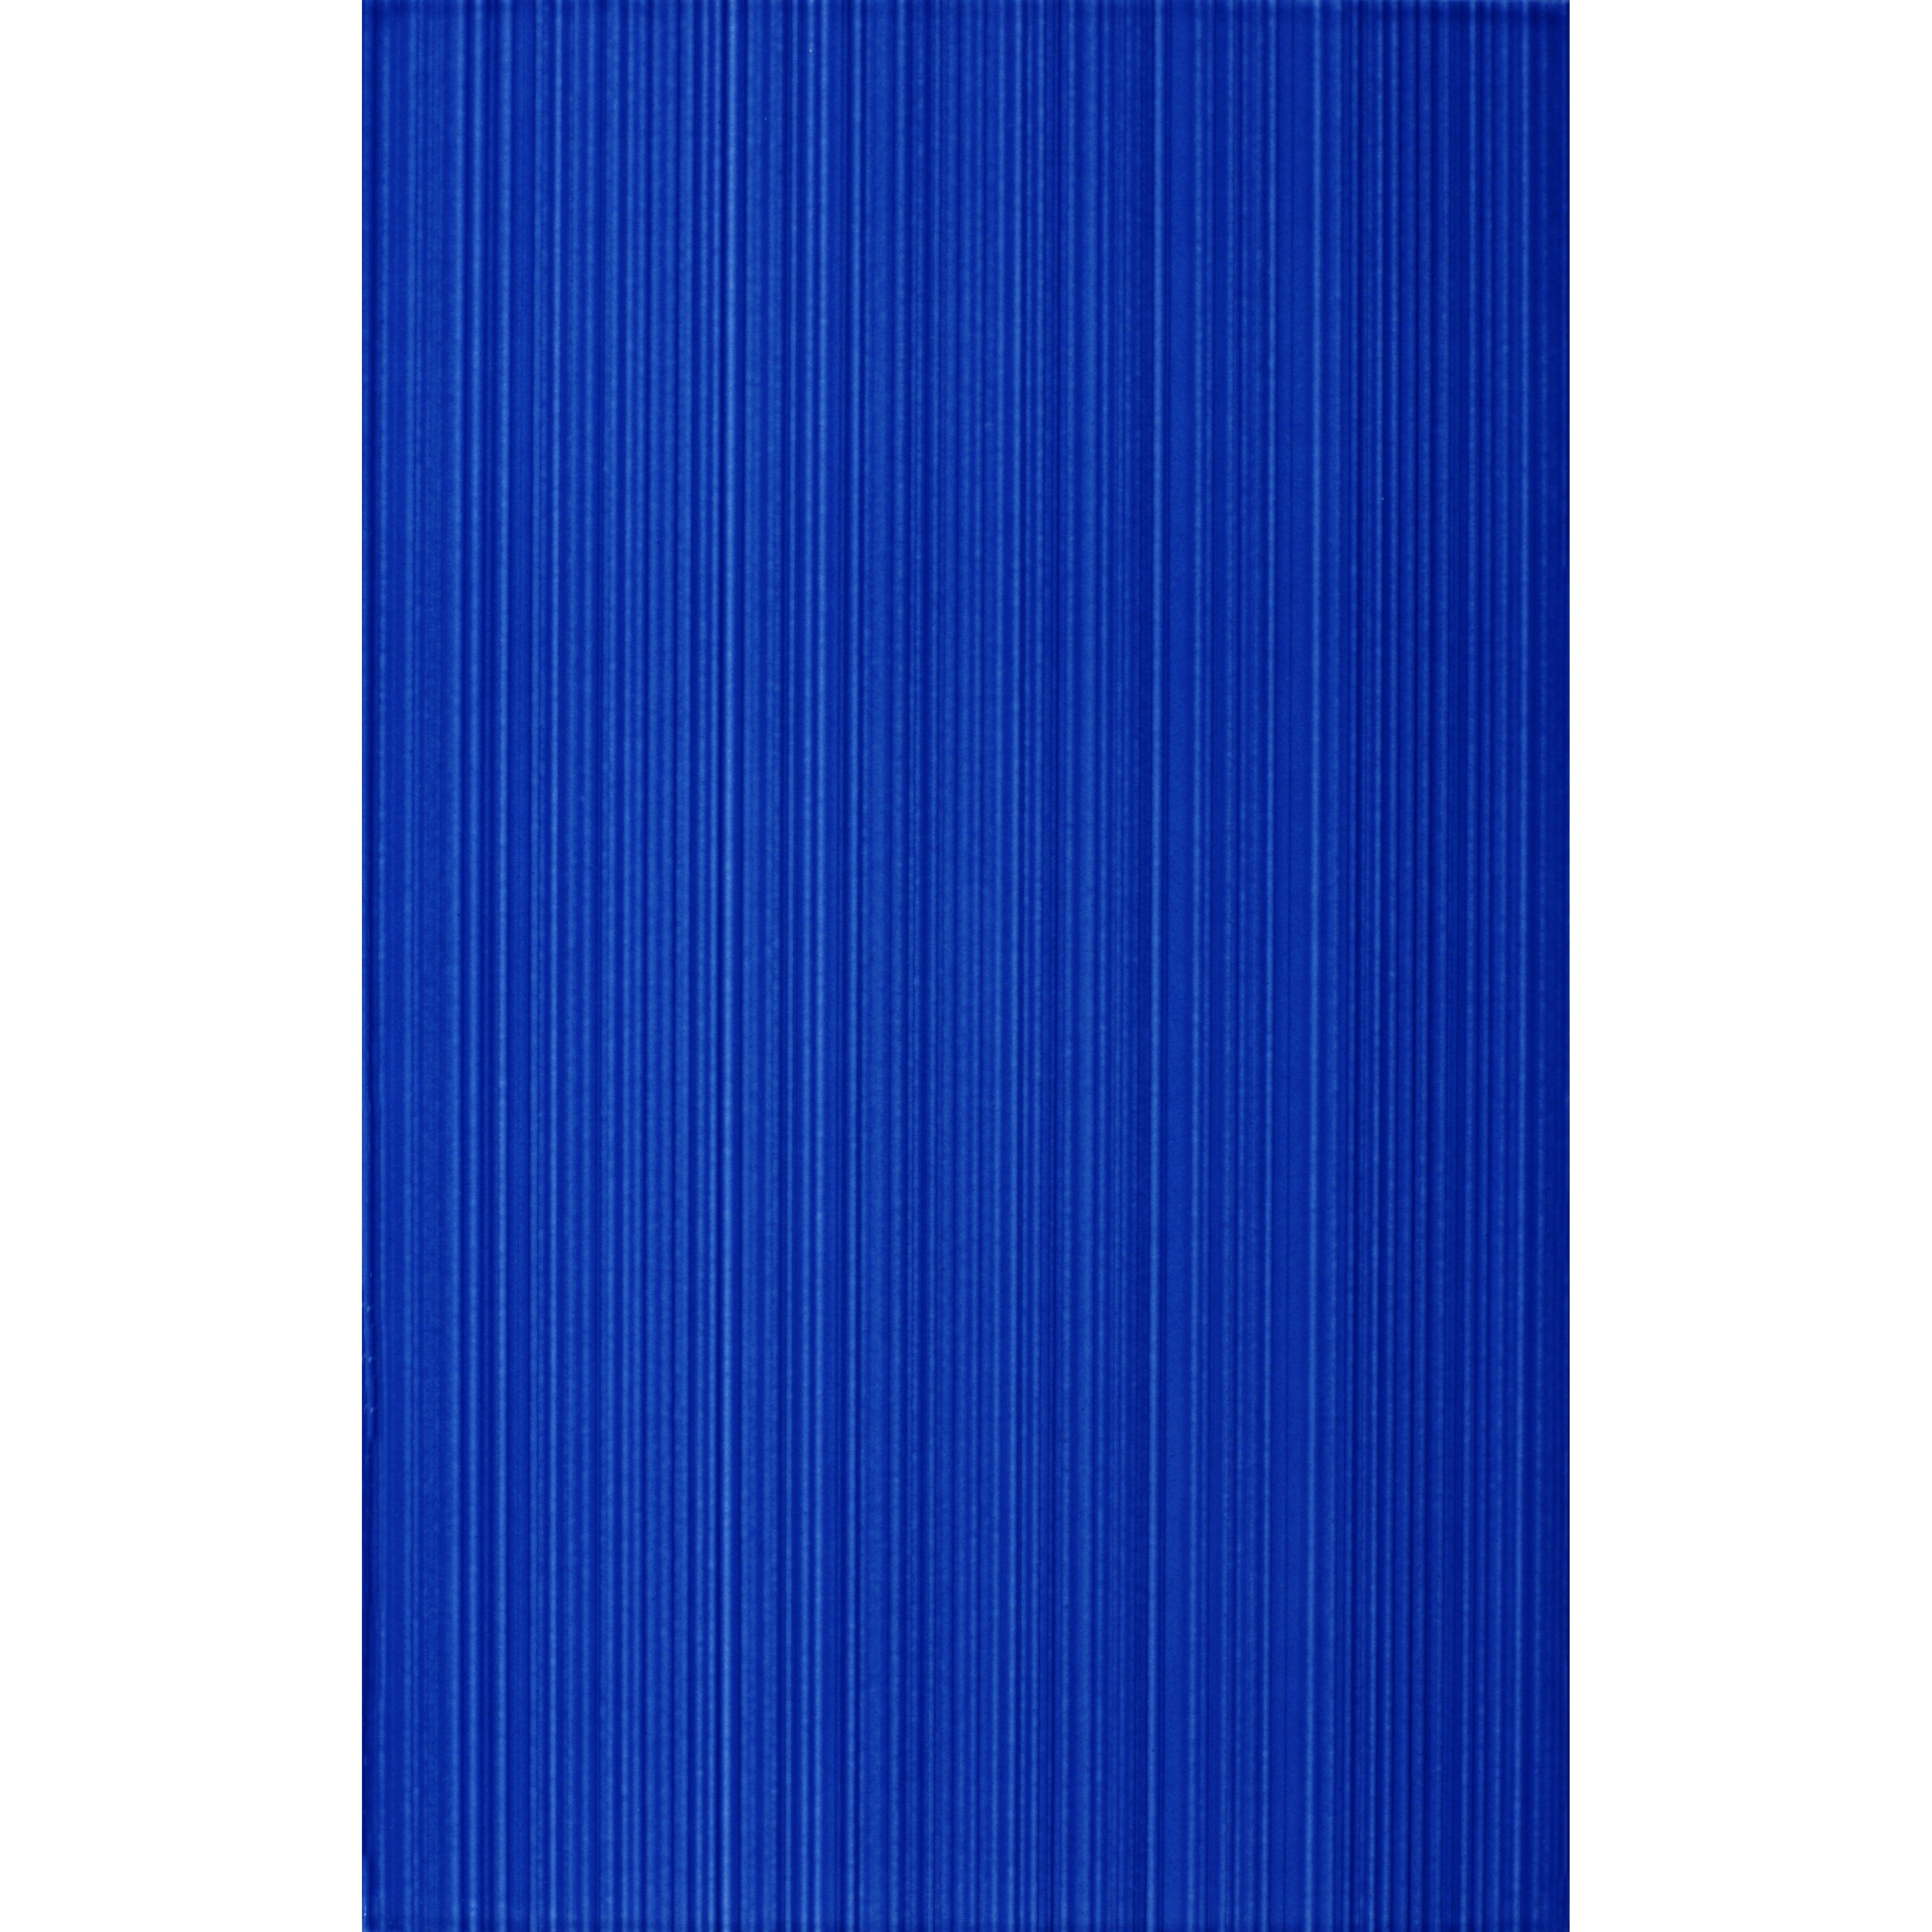 Faianta baie Kai Marina, albastru, lucios, uni, 40 x 25 cm albastru